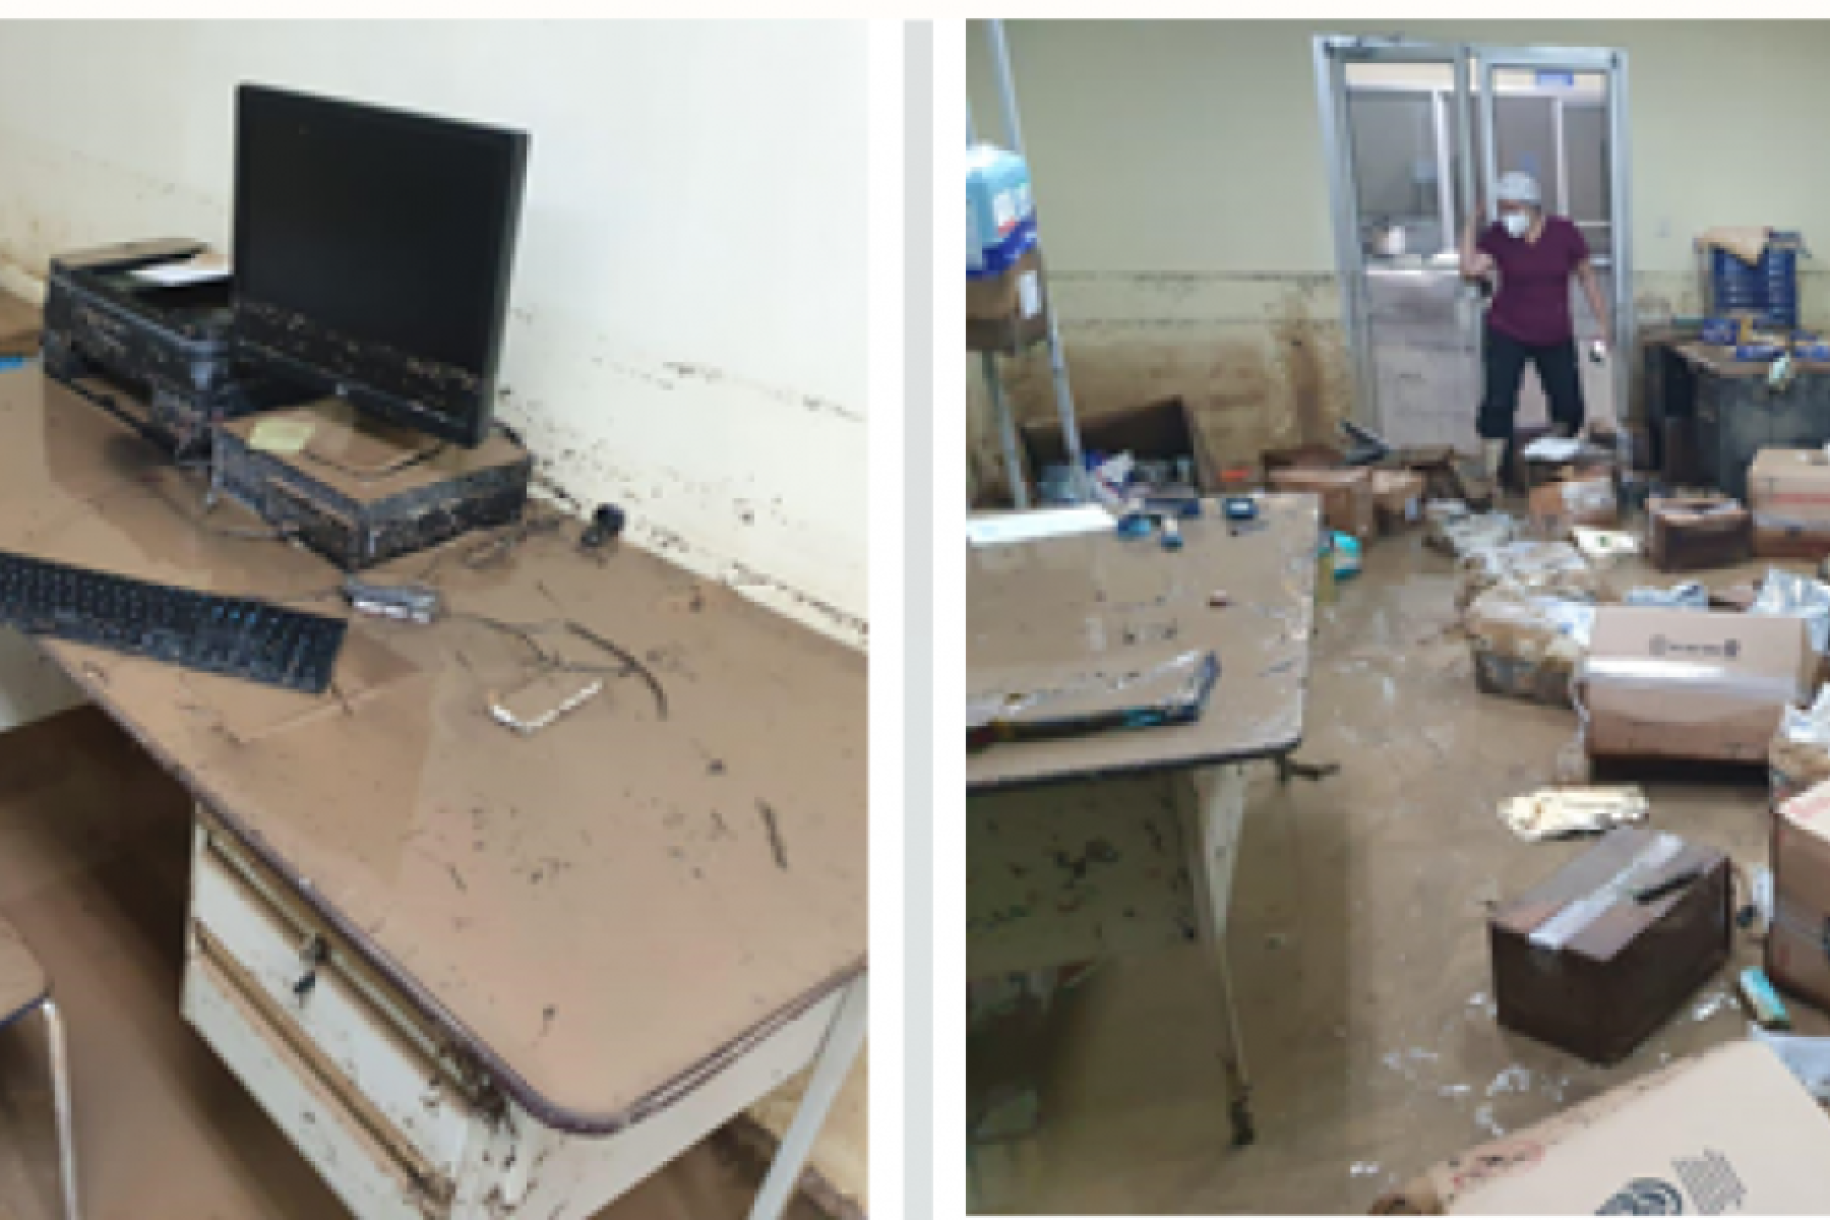 Vista lateral de una oficina devastada e inundada que muestra los equipos y el mobiliario dañados.